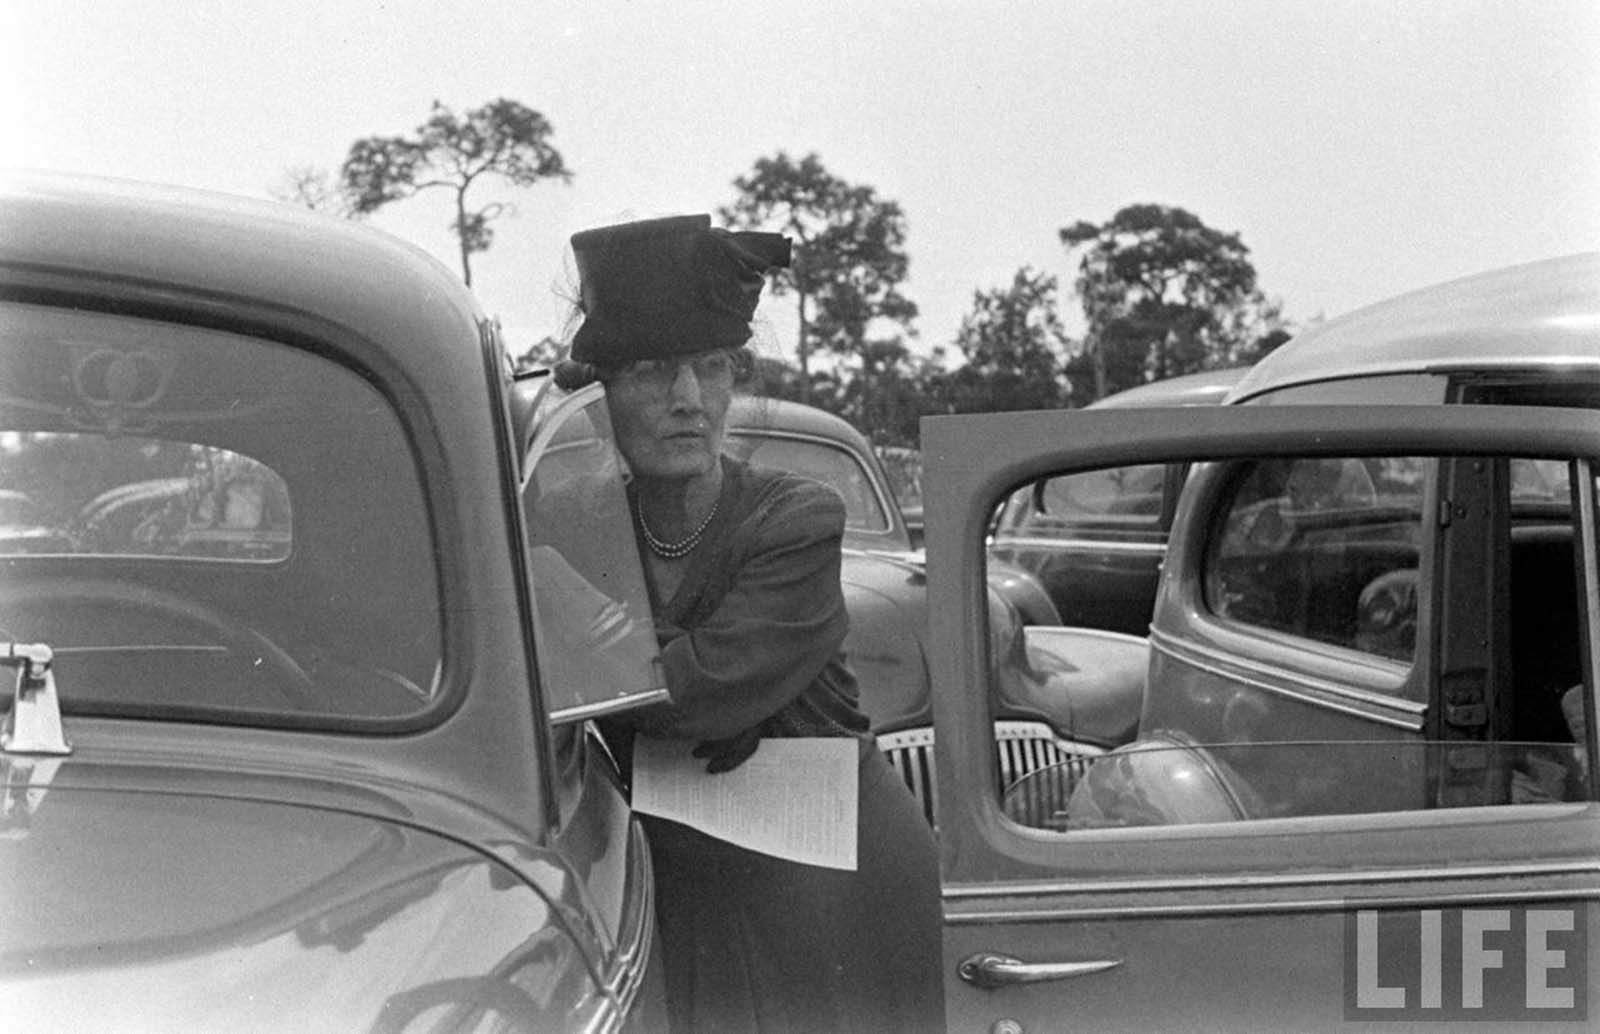 A drive-in church in Florida, 1947.